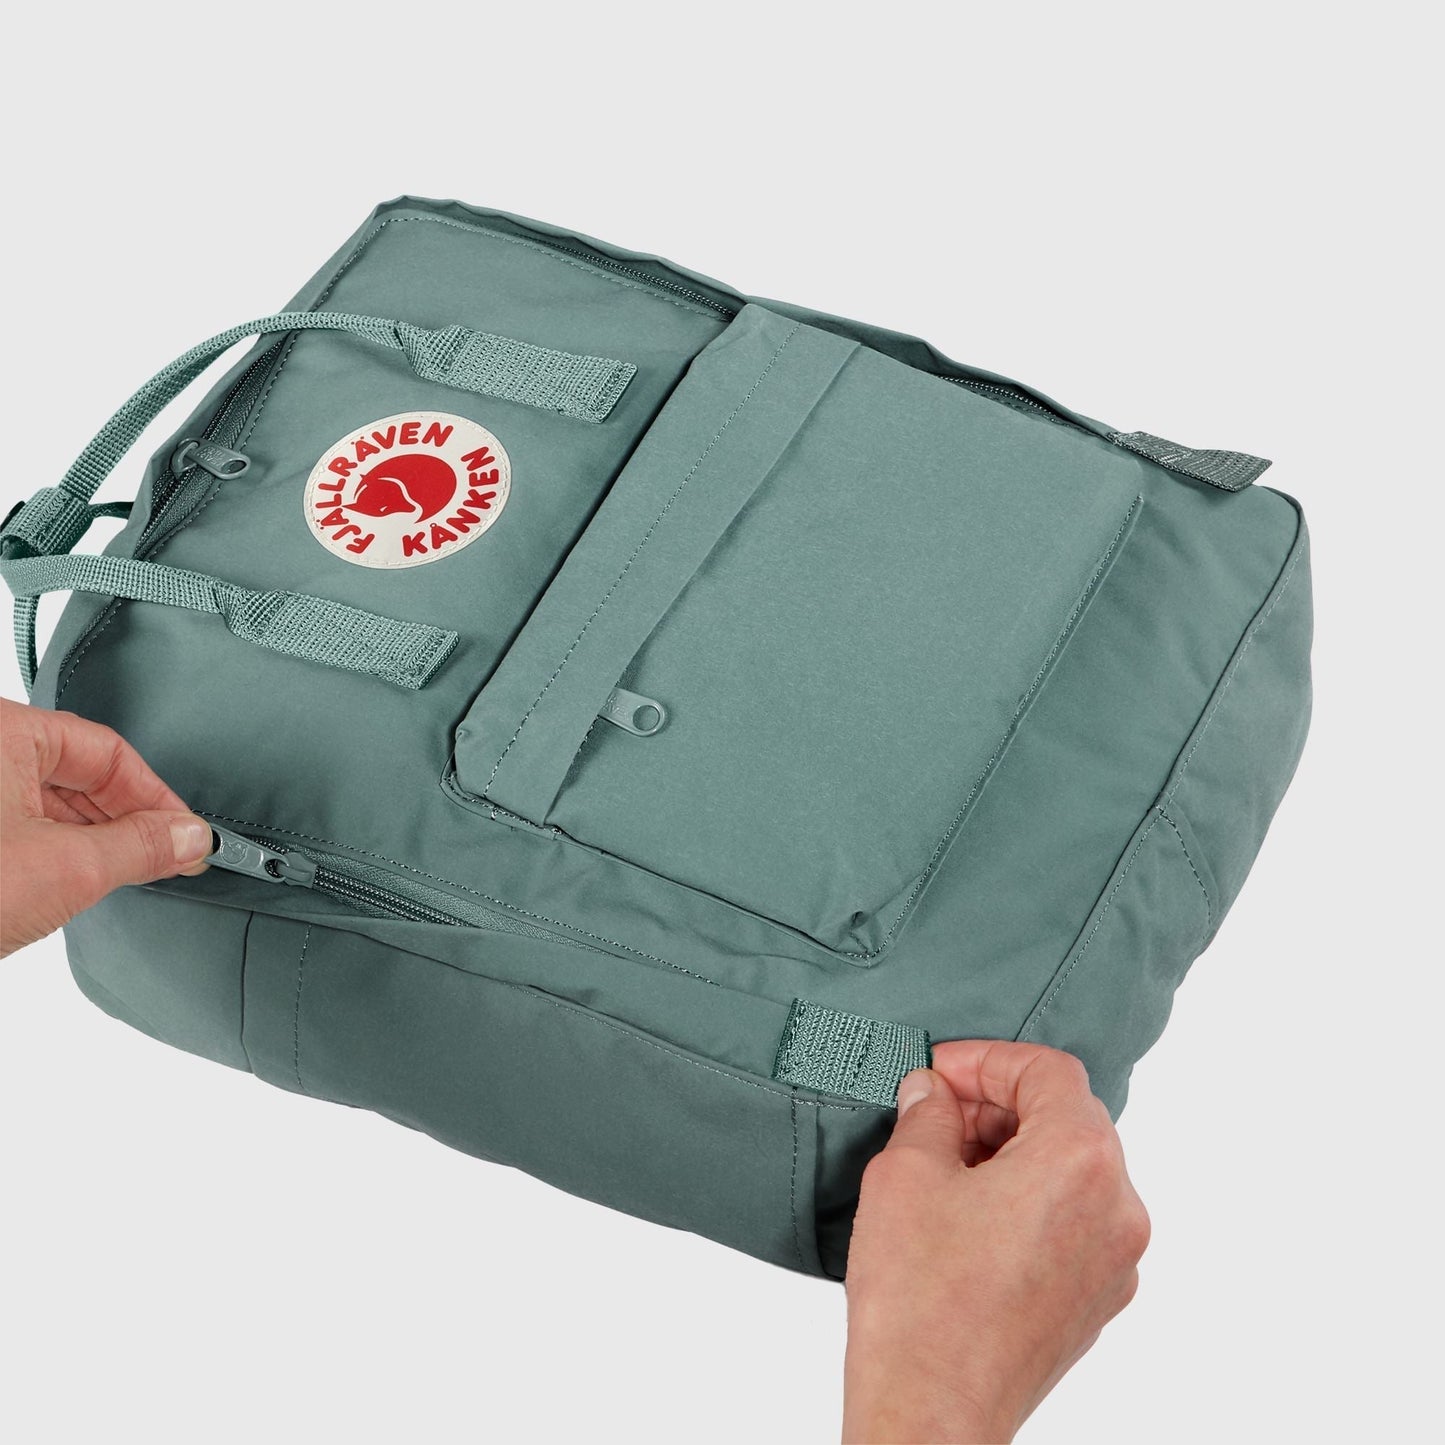 Fjallraven Kanken 狐狸袋 背囊 書包戶外背包 School bag outdoor backpack 16L - Graphite 23510-031